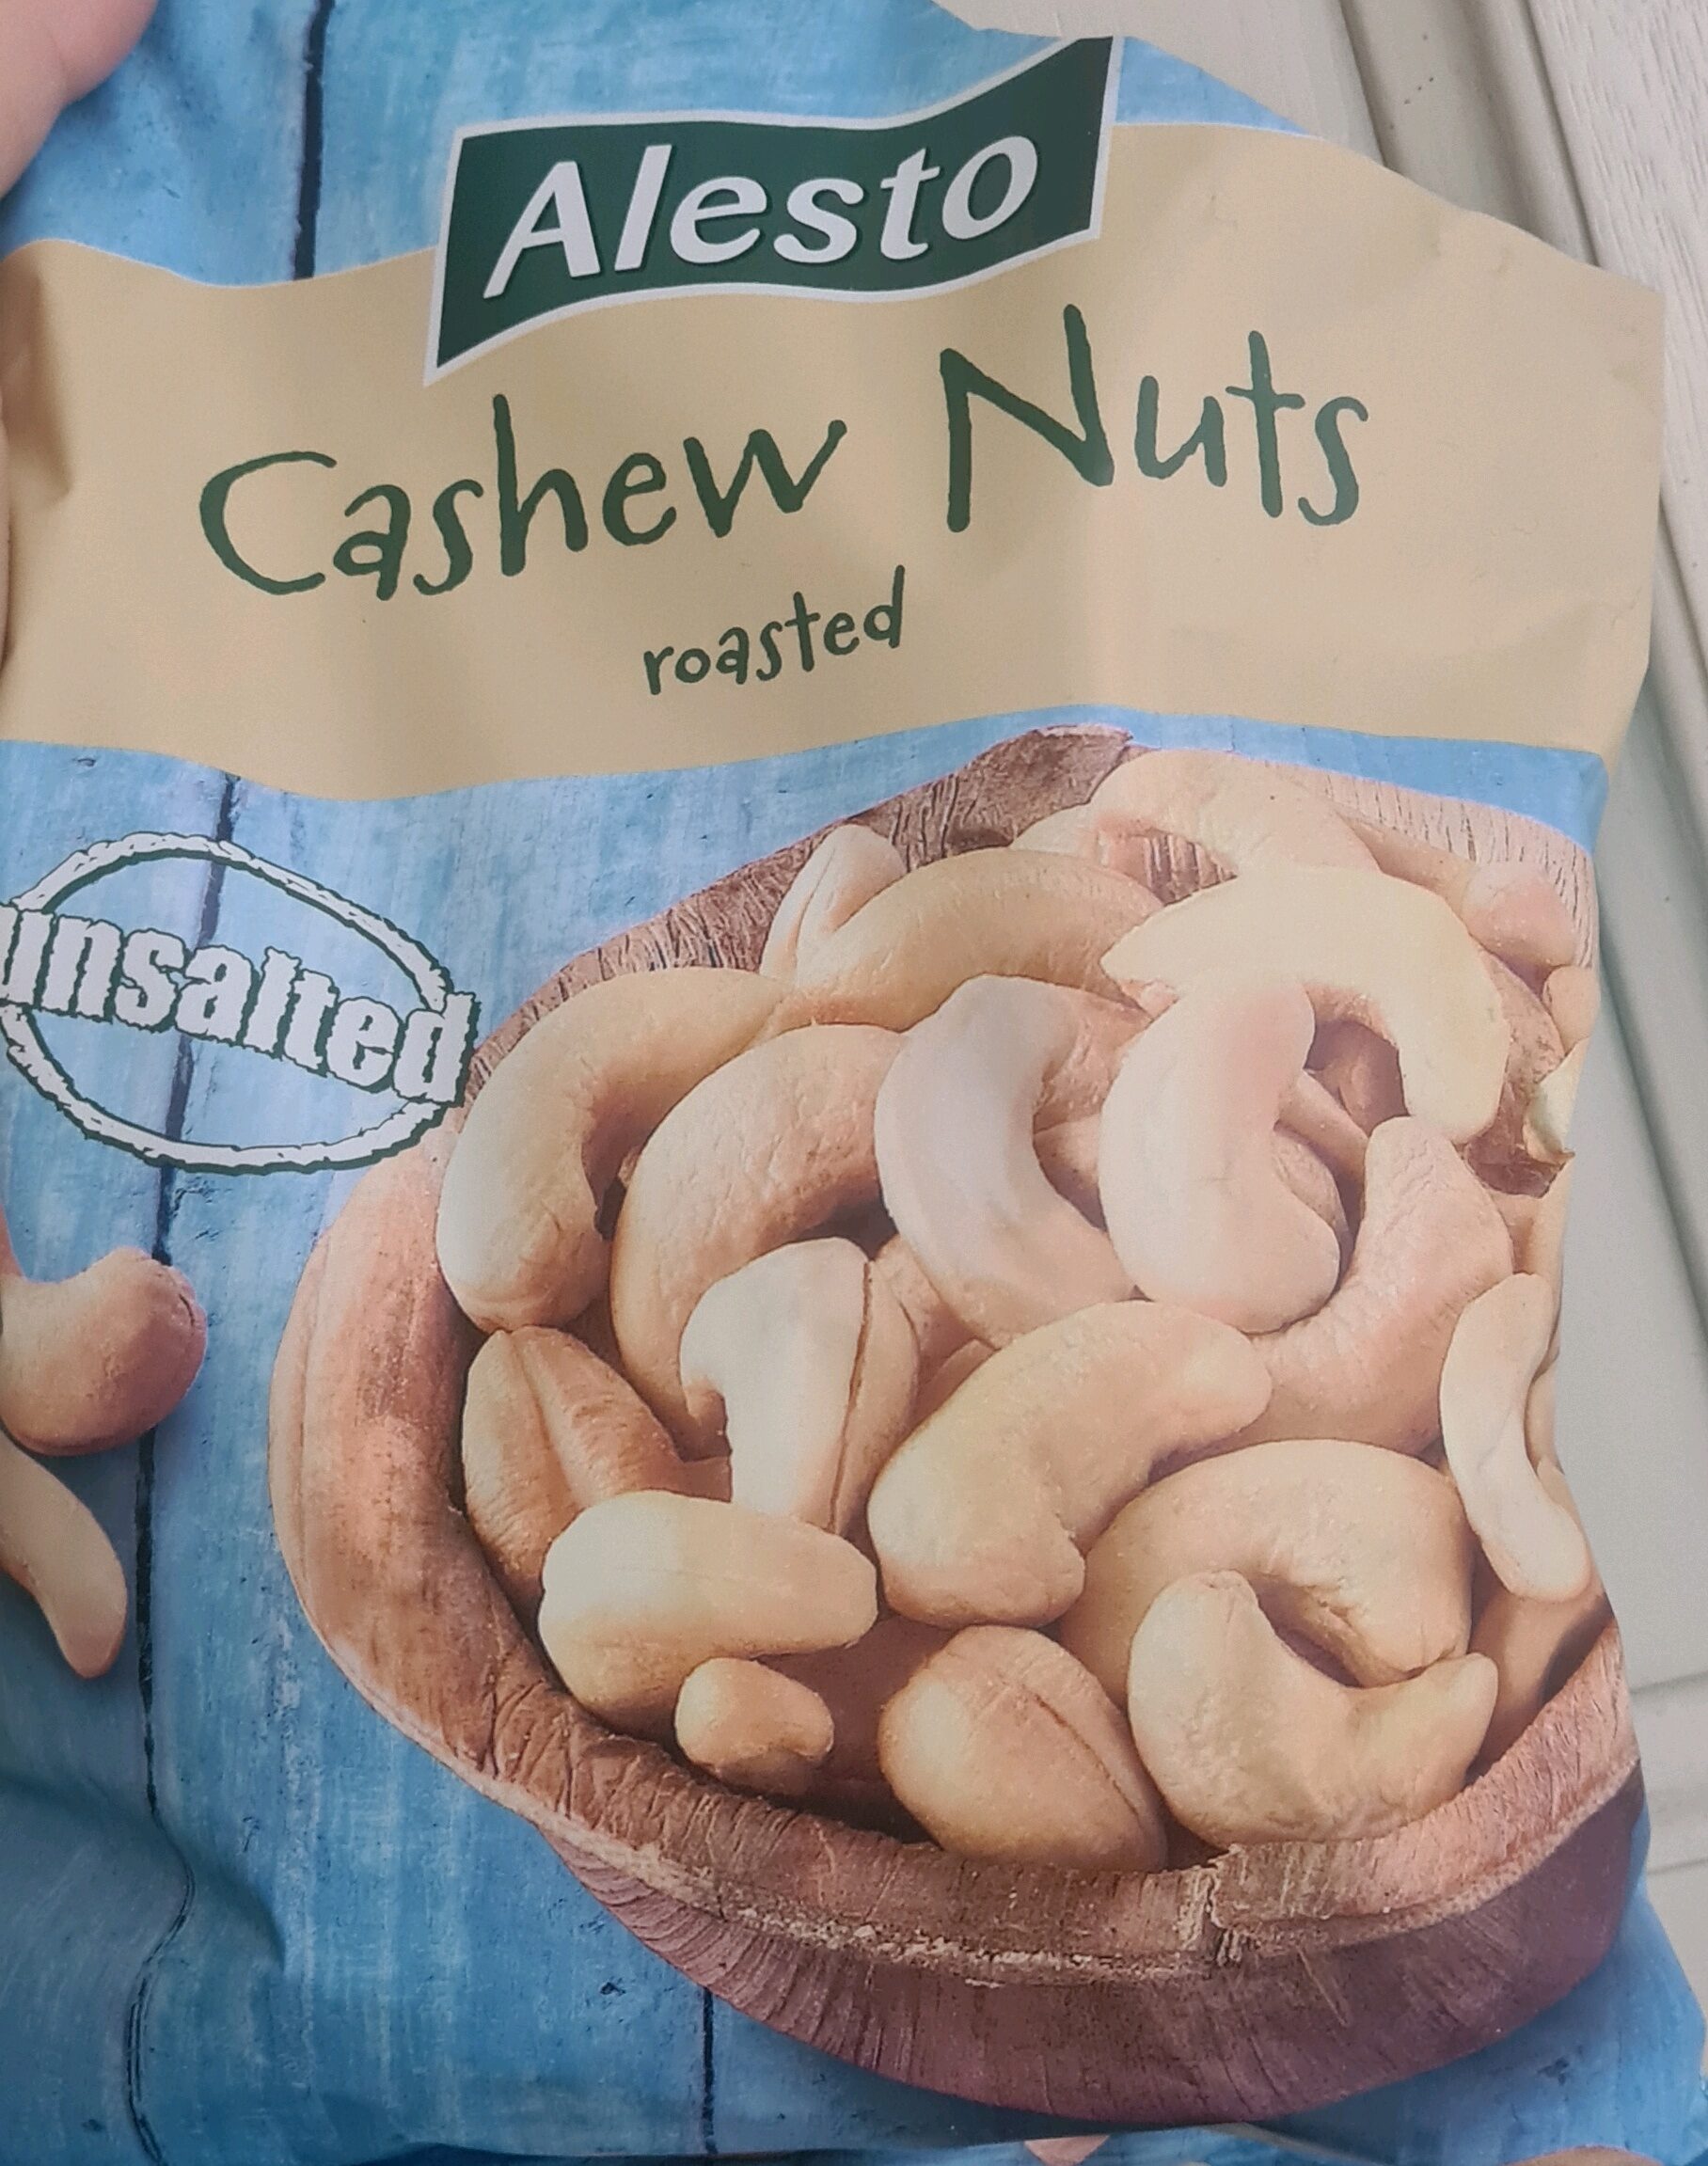 Cashew nuts - Product - en